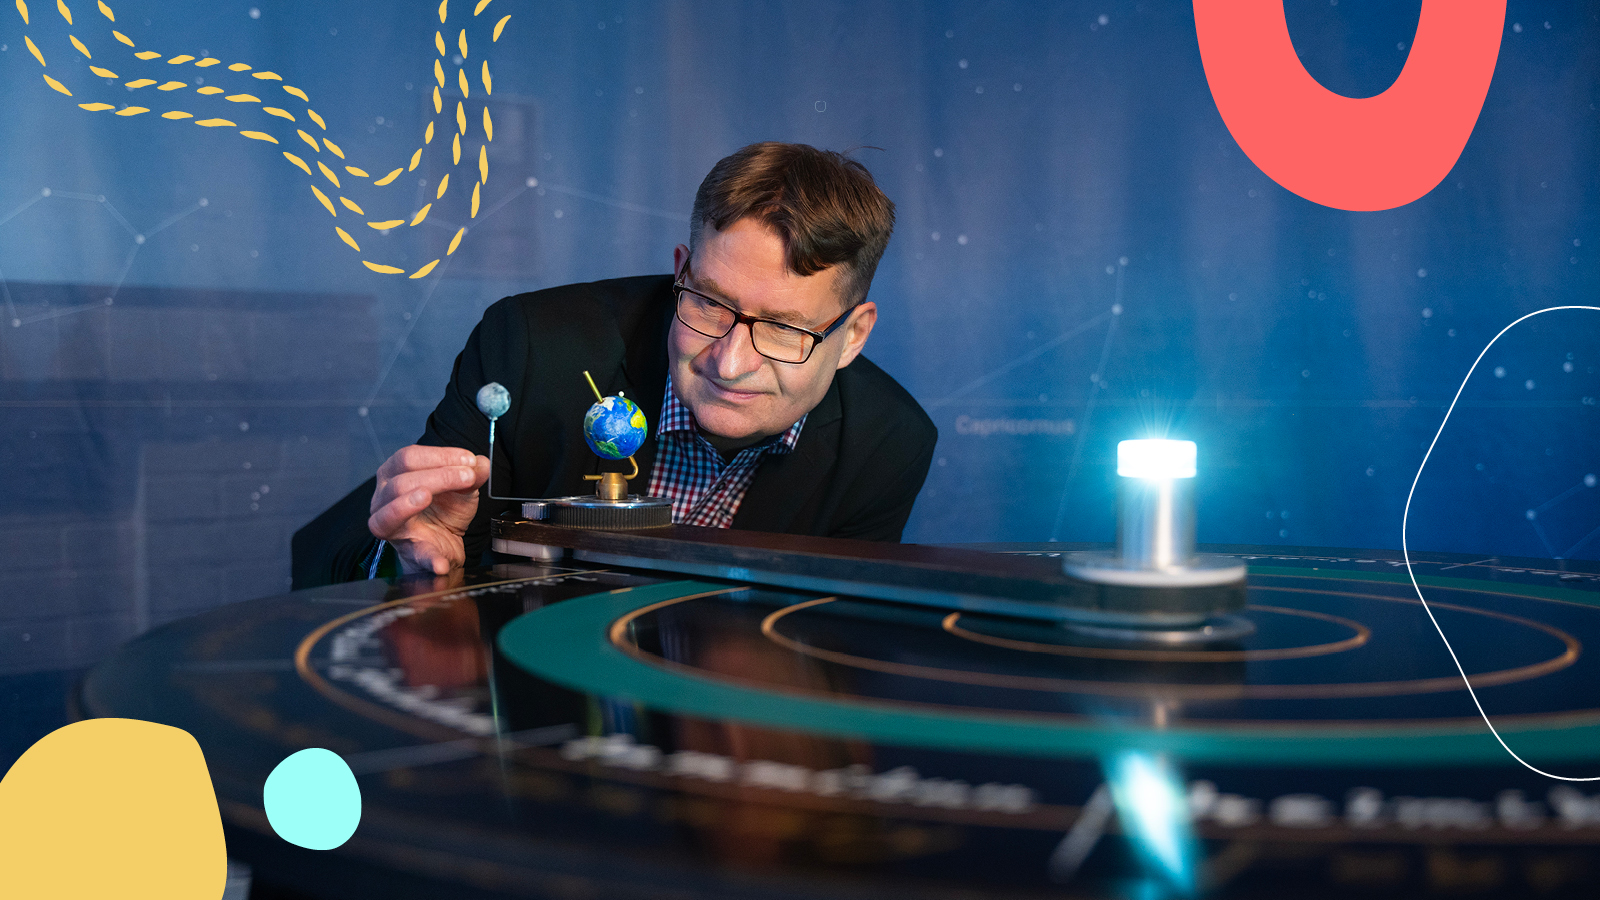 Tähdet ja avaruus -lehden päätoimittaja Marko Pekkola: "Avaruuslennoista ja tähtitieteen arvoituksista on tullut osa mainstreamia"